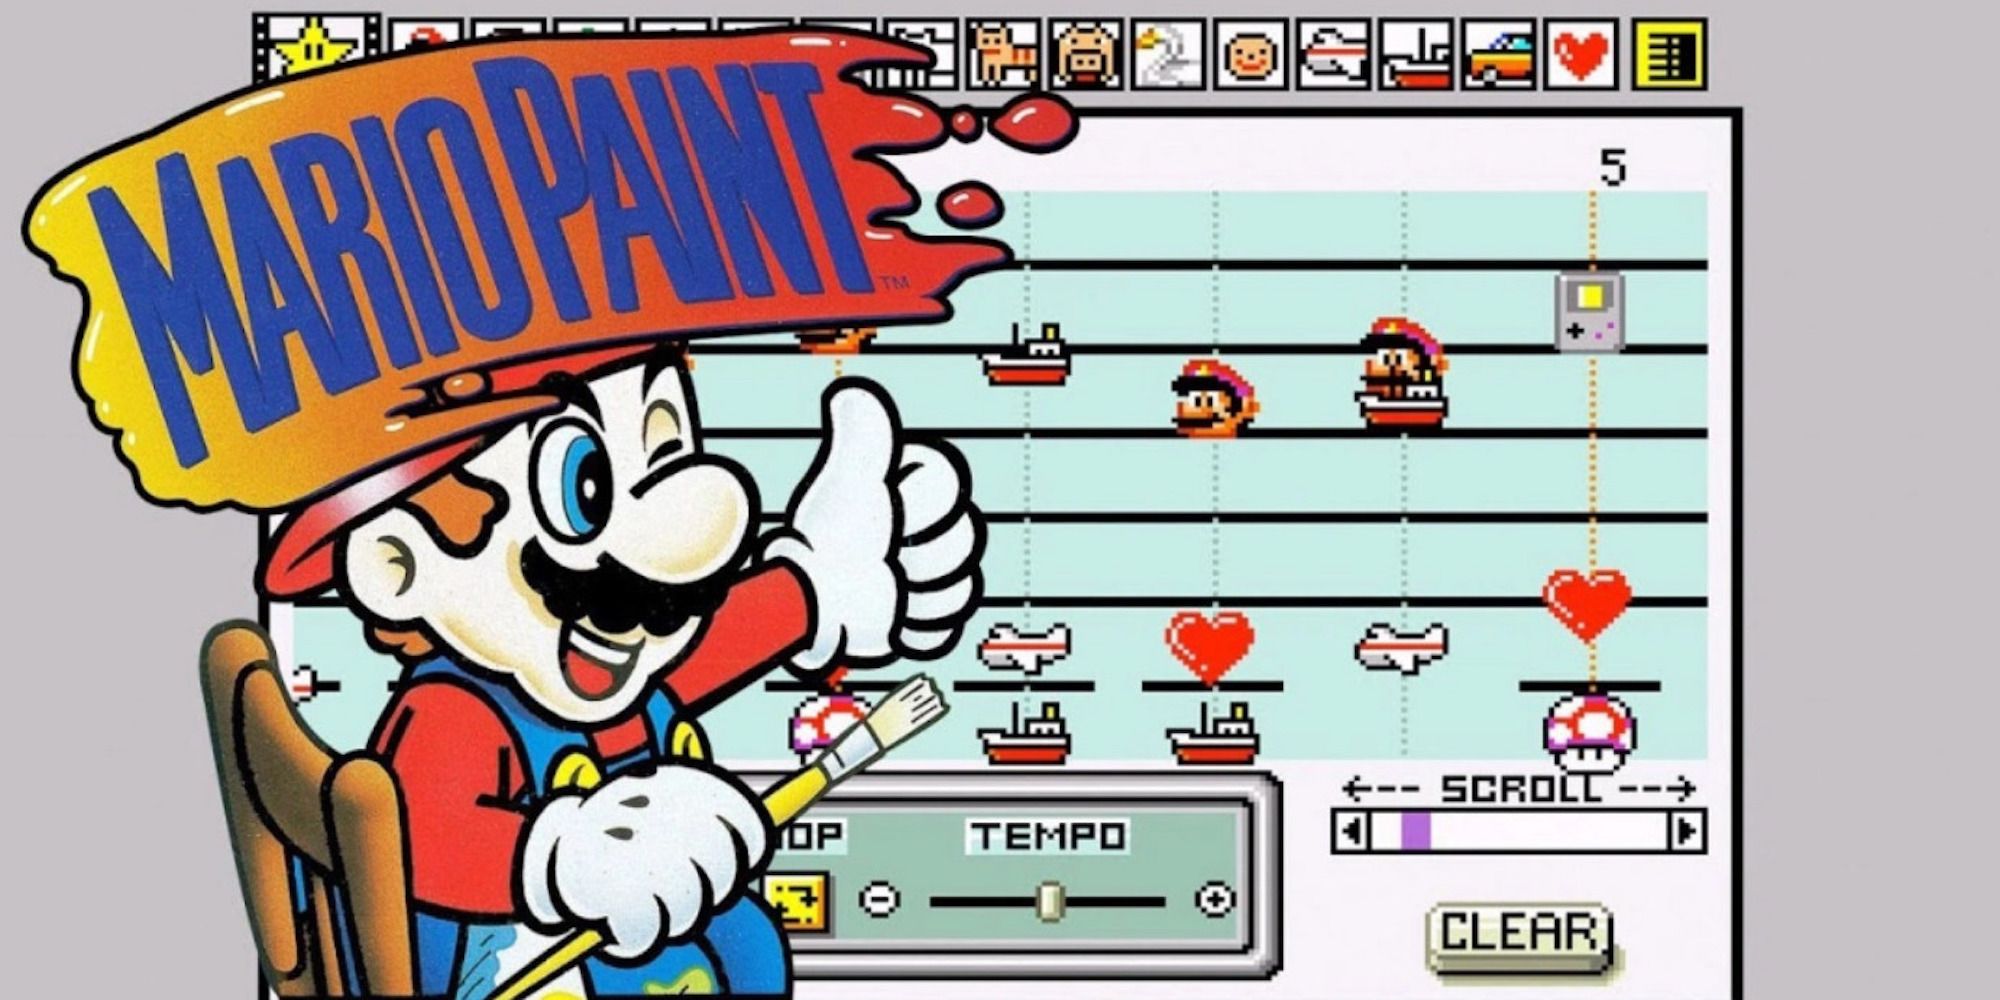 Promo art featuring Mario in Mario Paint